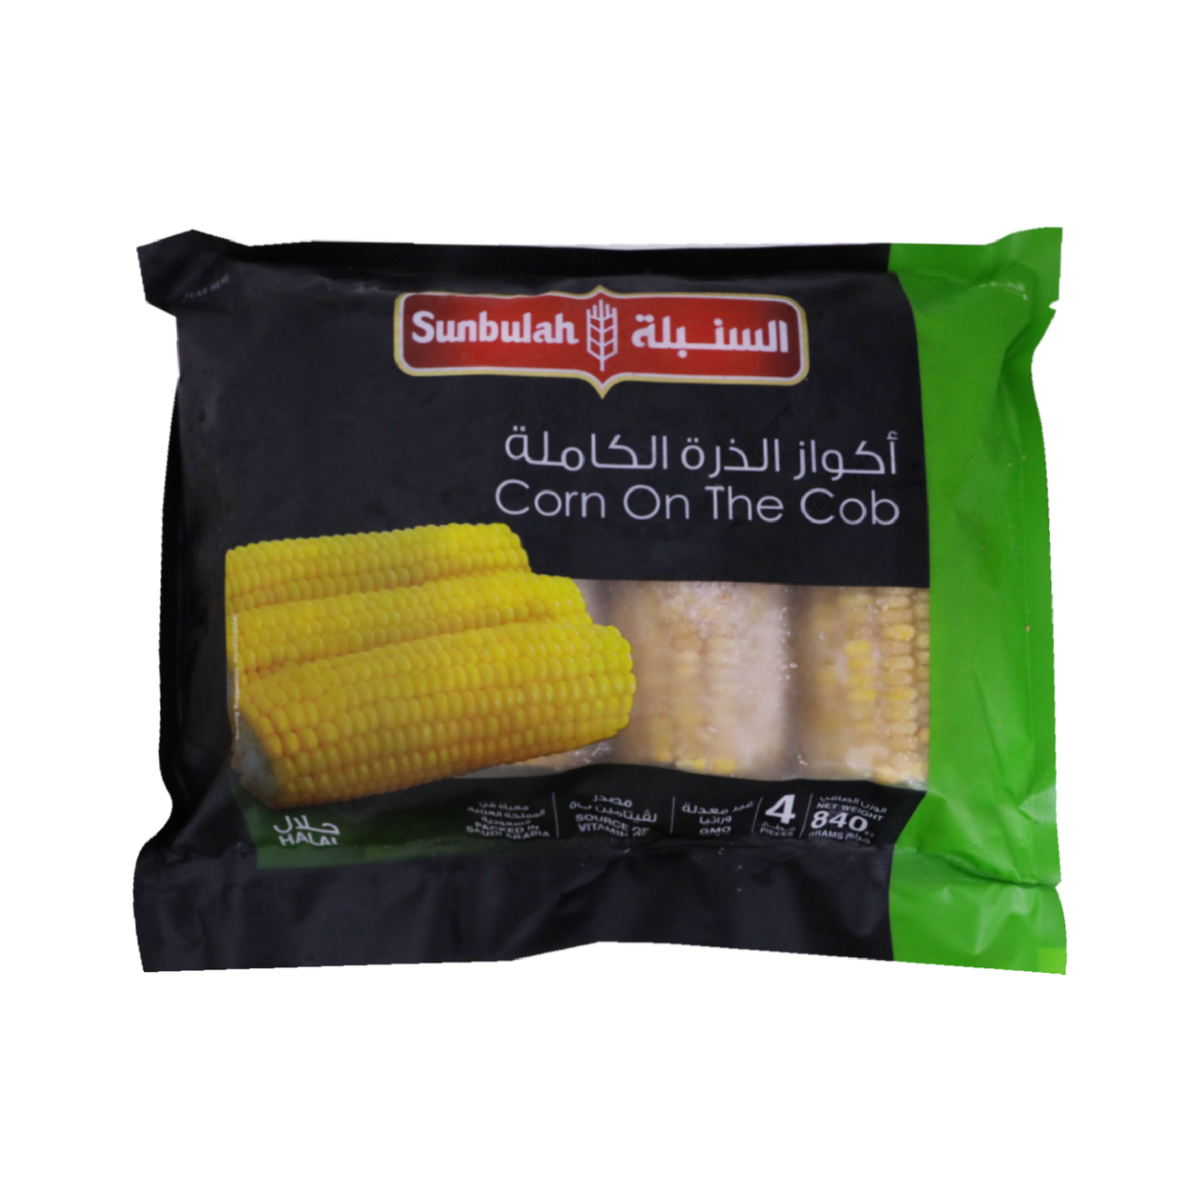 اشتري قم بشراء السنبلة ذرة كاملة مجمدة 840 جم Online at Best Price من الموقع - من لولو هايبر ماركت Corn في السعودية